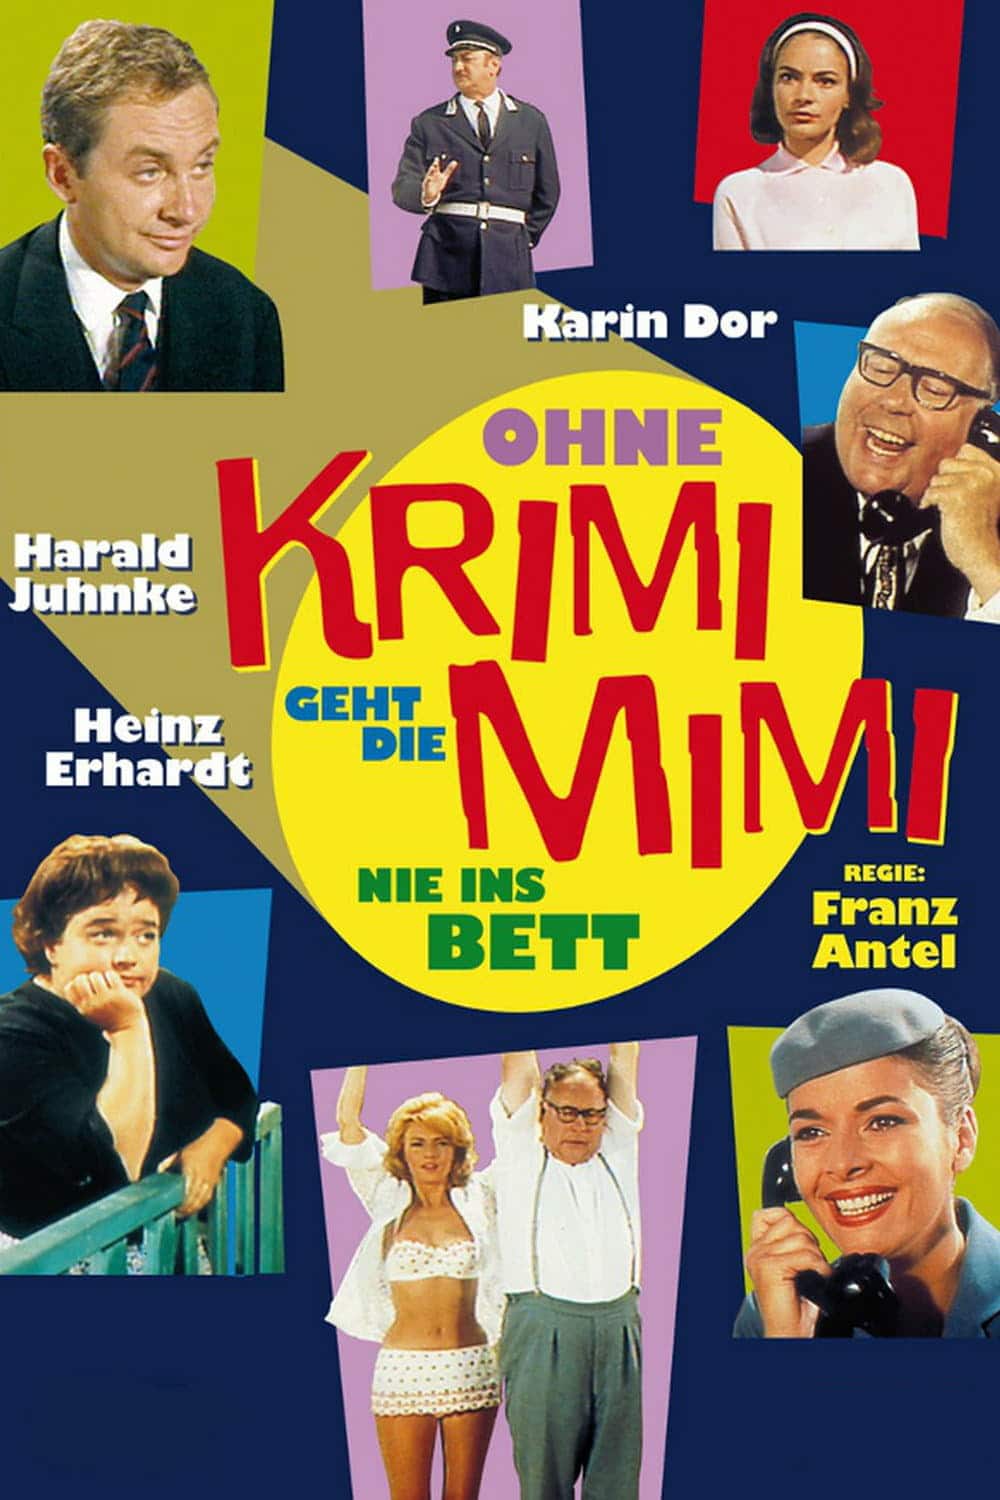 Plakat von "Ohne Krimi geht die Mimi nie ins Bett"